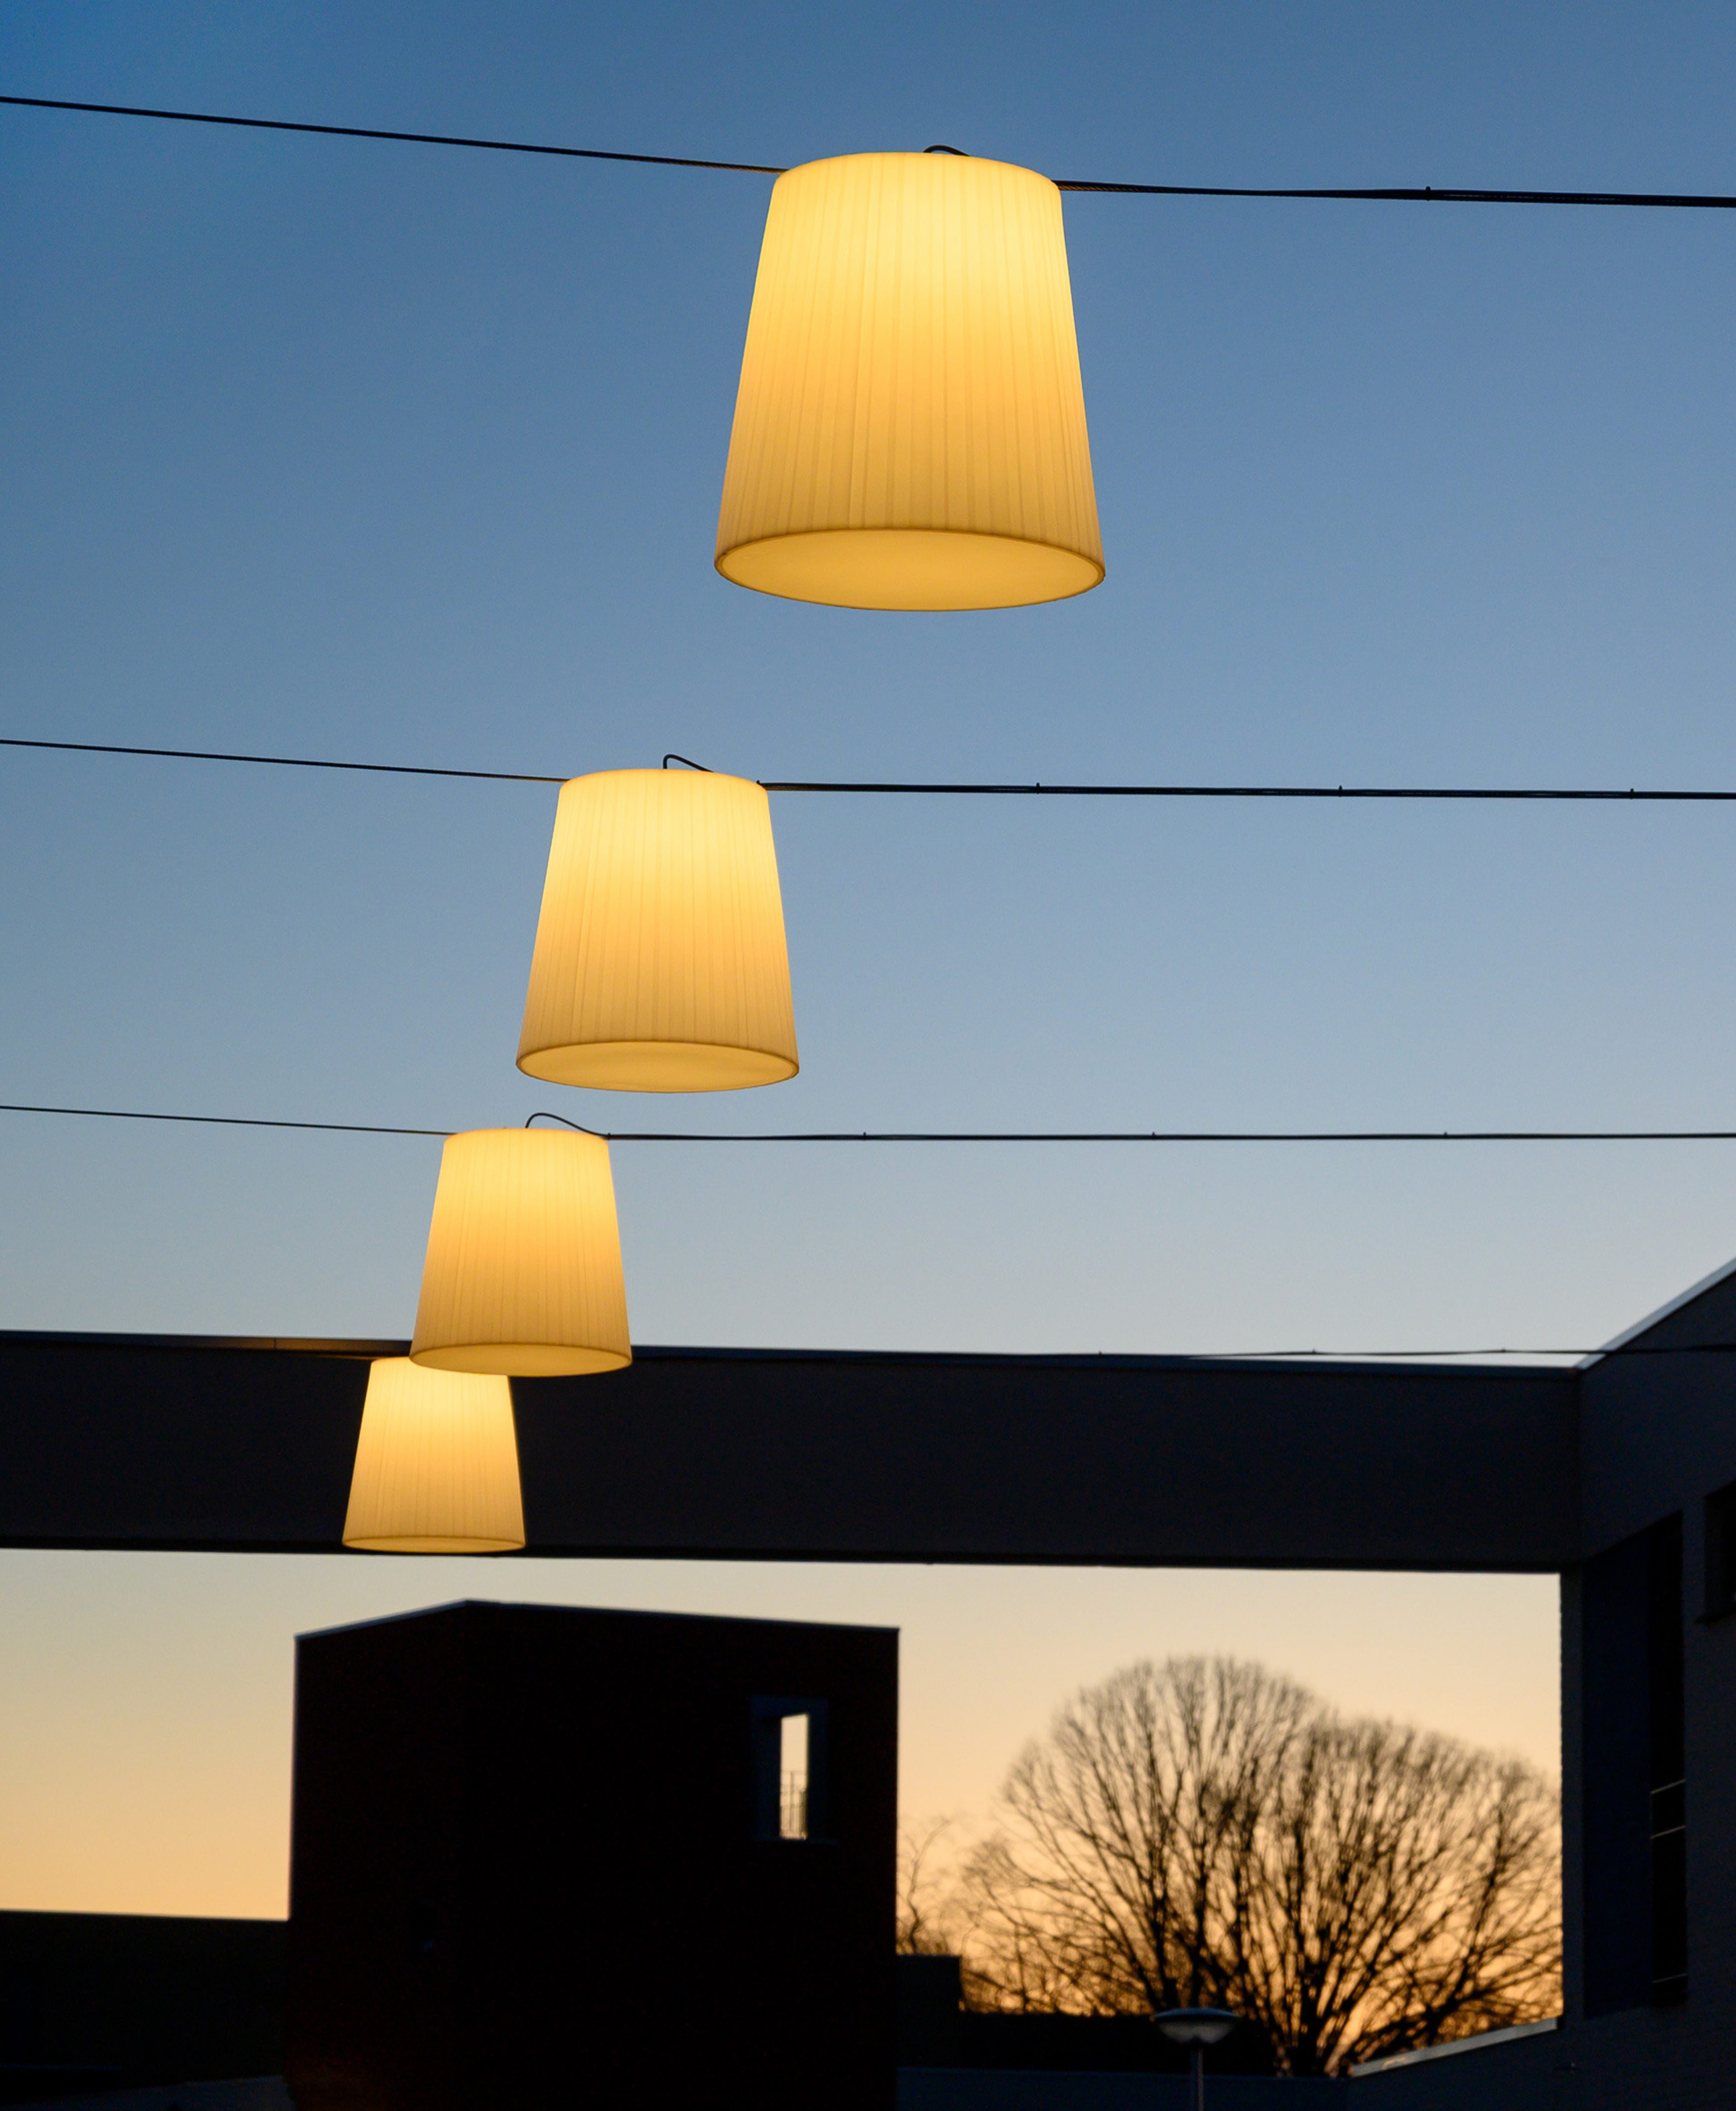 Lichte©
Hanging lamp